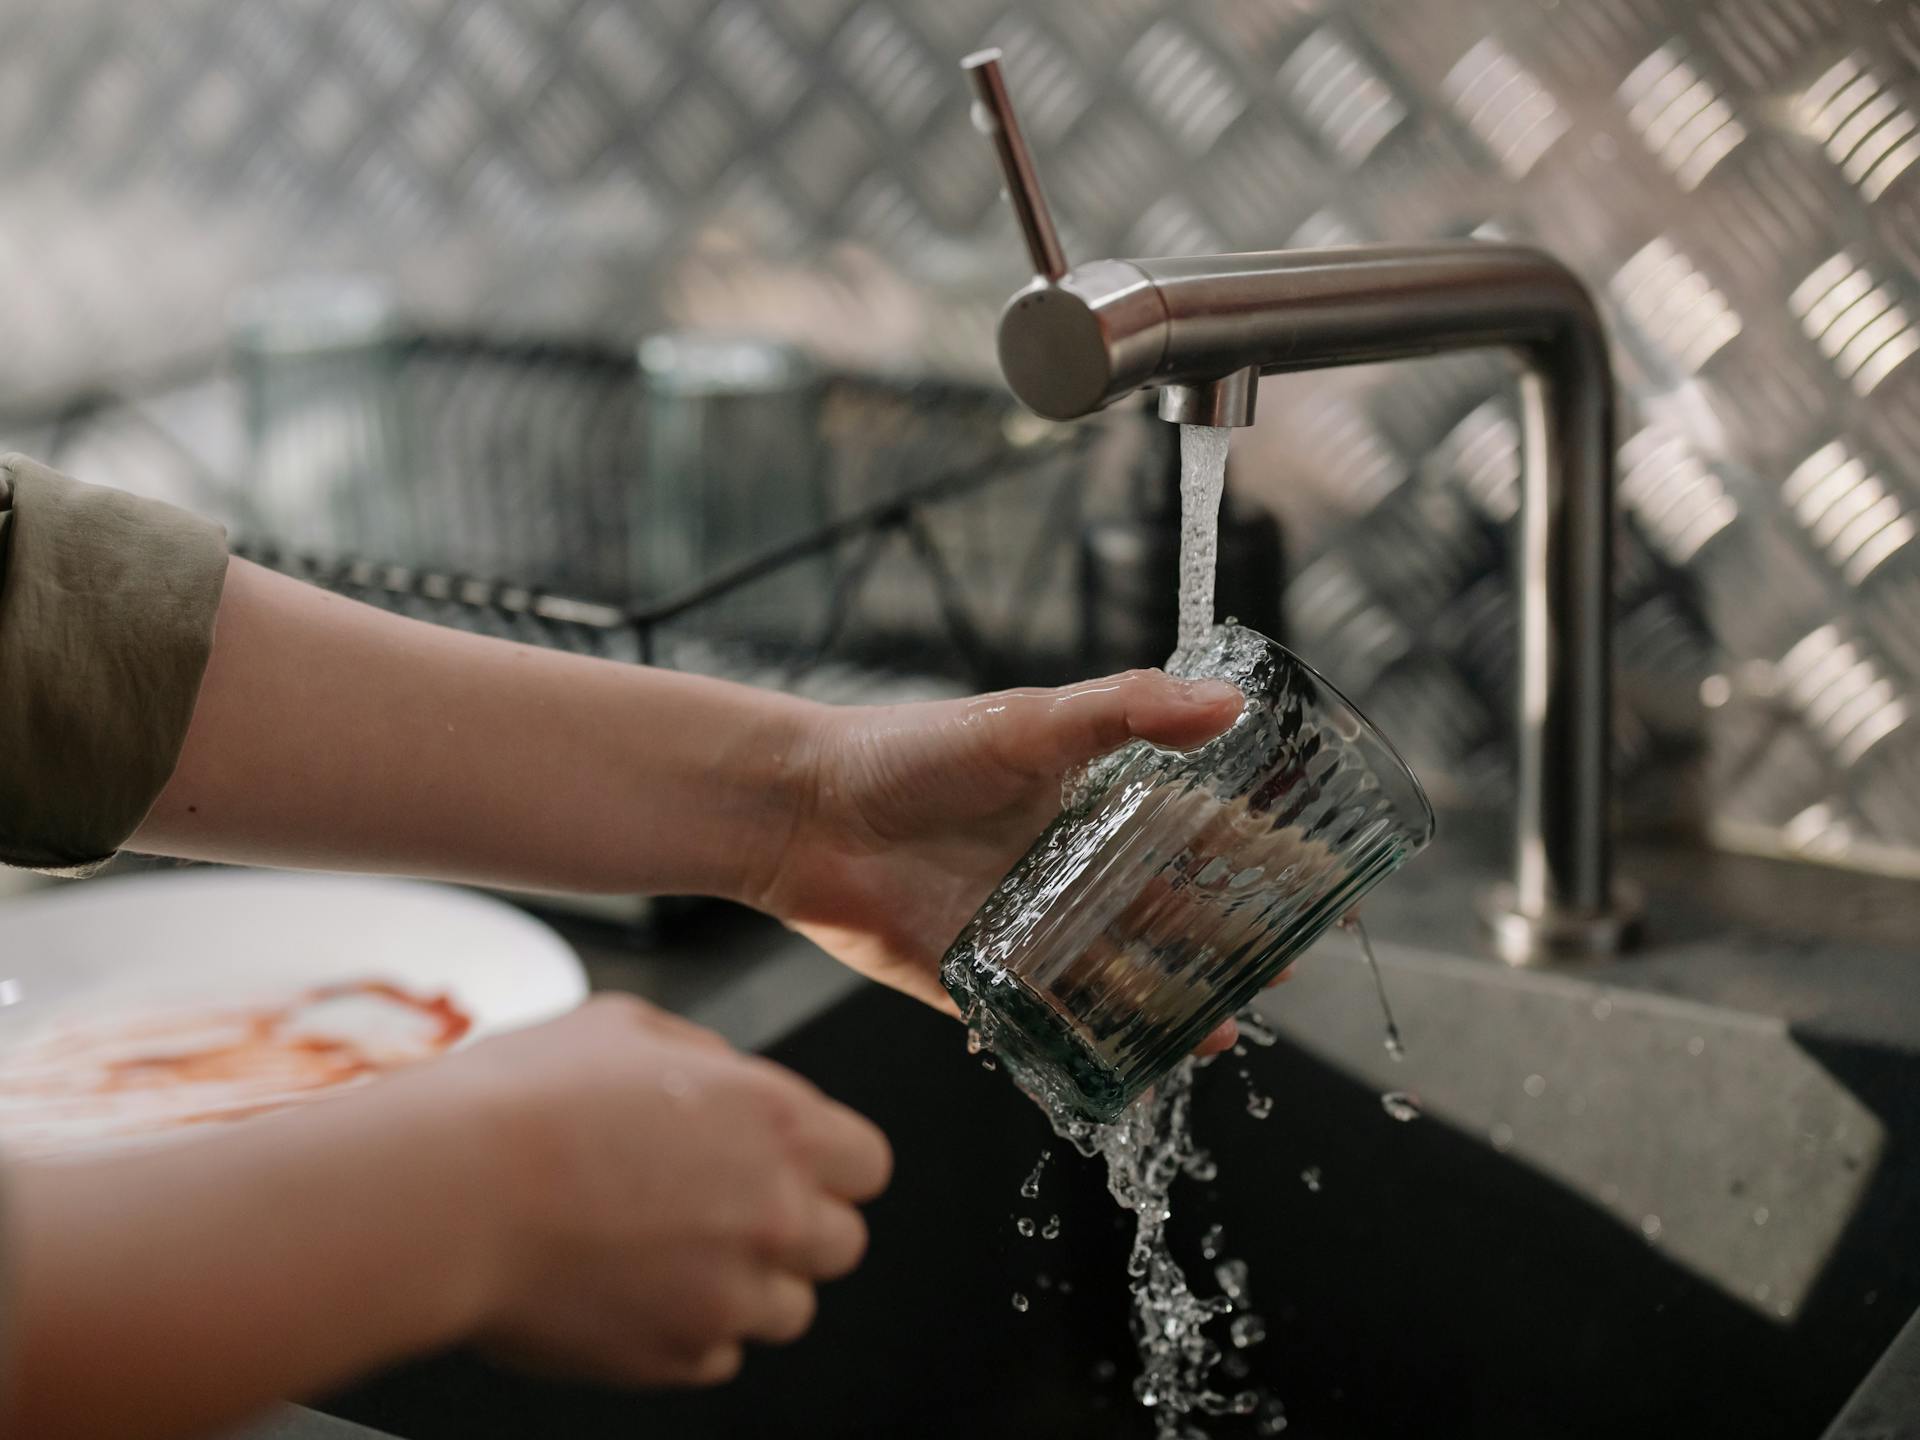 Una persona lavando platos | Foto: Pexels